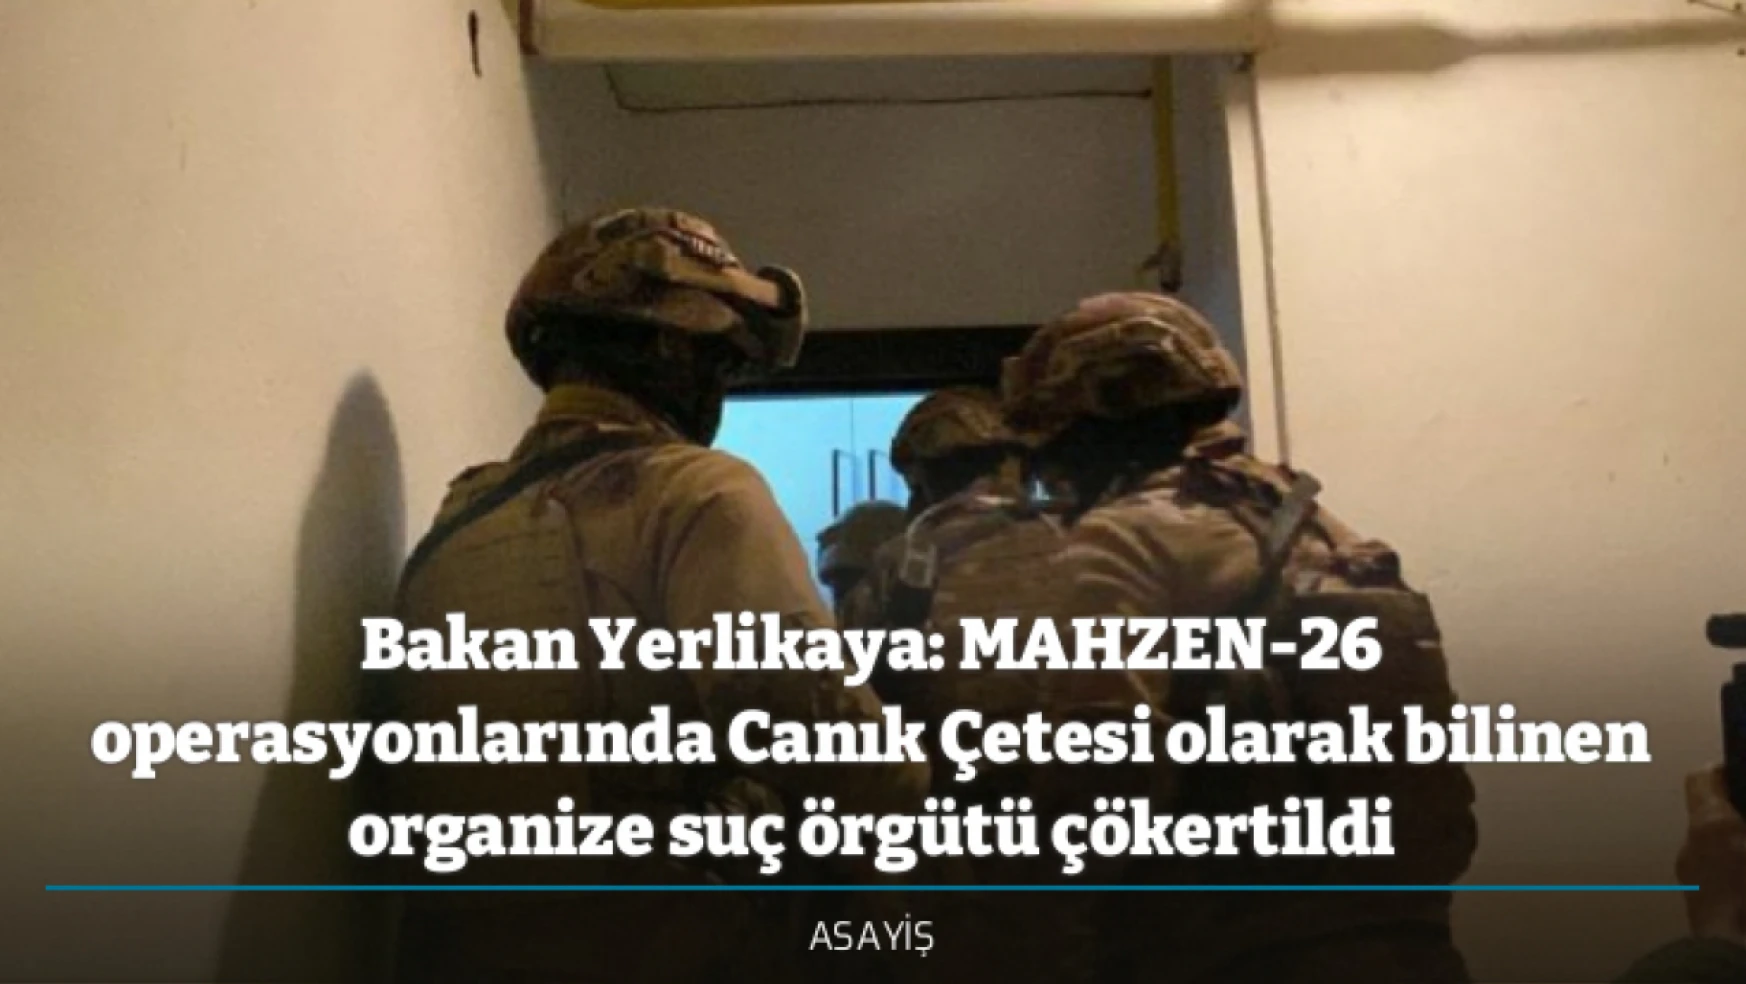 Bakan Yerlikaya: MAHZEN-26 operasyonlarında Canık Çetesi olarak bilinen organize suç örgütü çökertildi